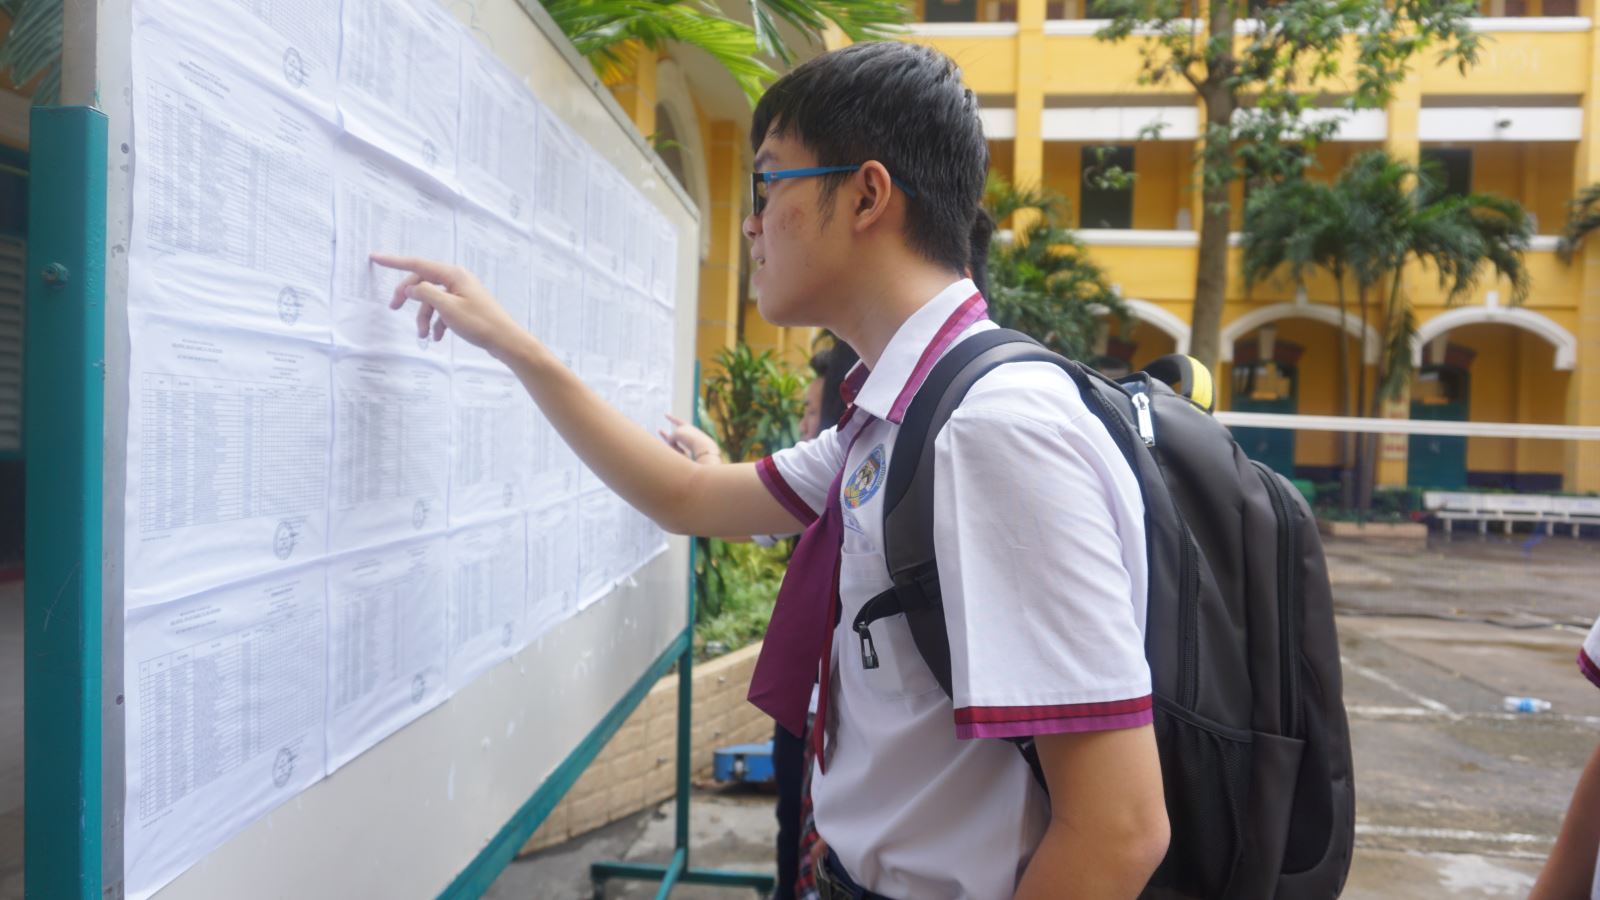  TP Hồ Chí Minh: Nhiều điểm mới trong tuyển sinh lớp chuyên 